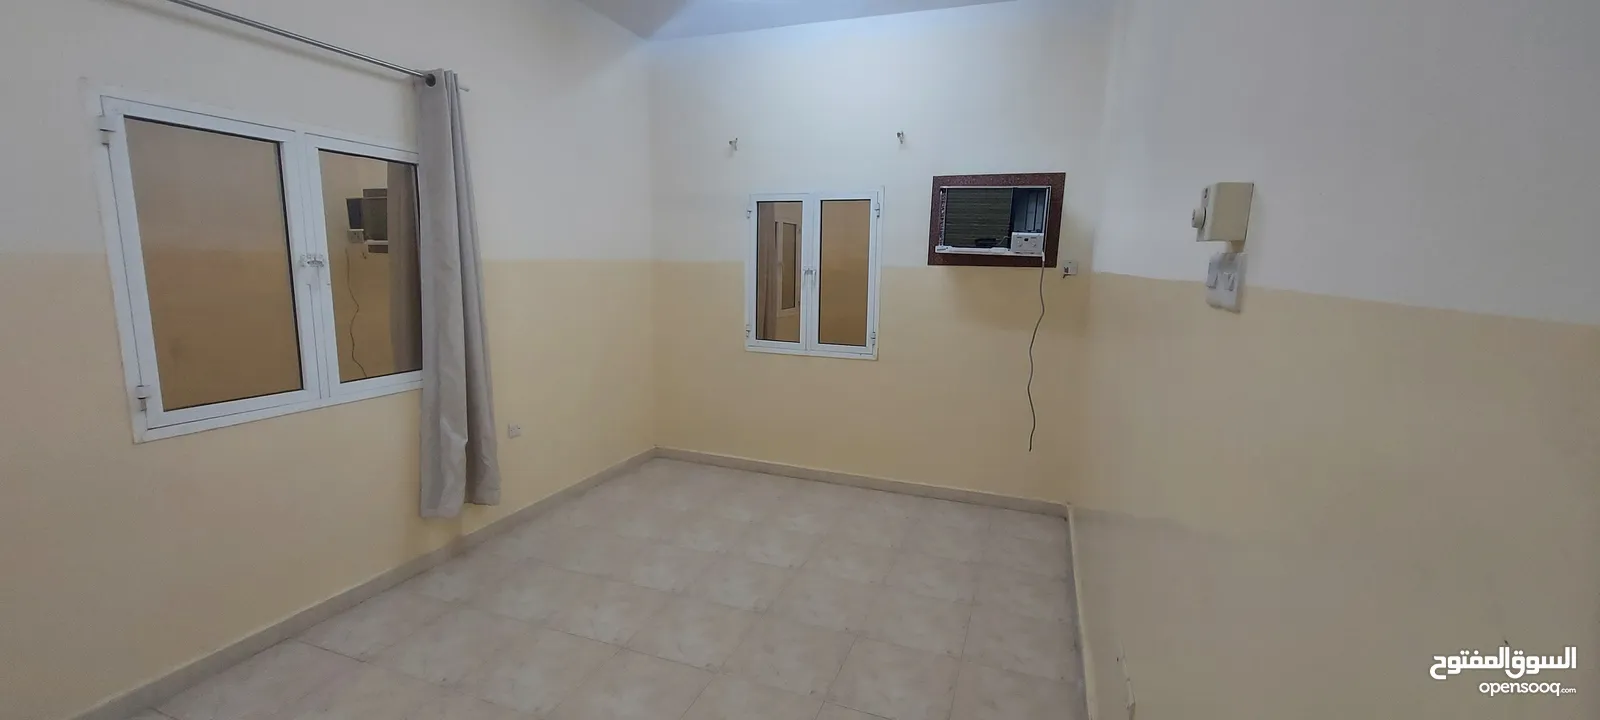 شقق للإيجار صحار فلج القبائل Apartments for rent in Sohar, Falaj Al Qabail